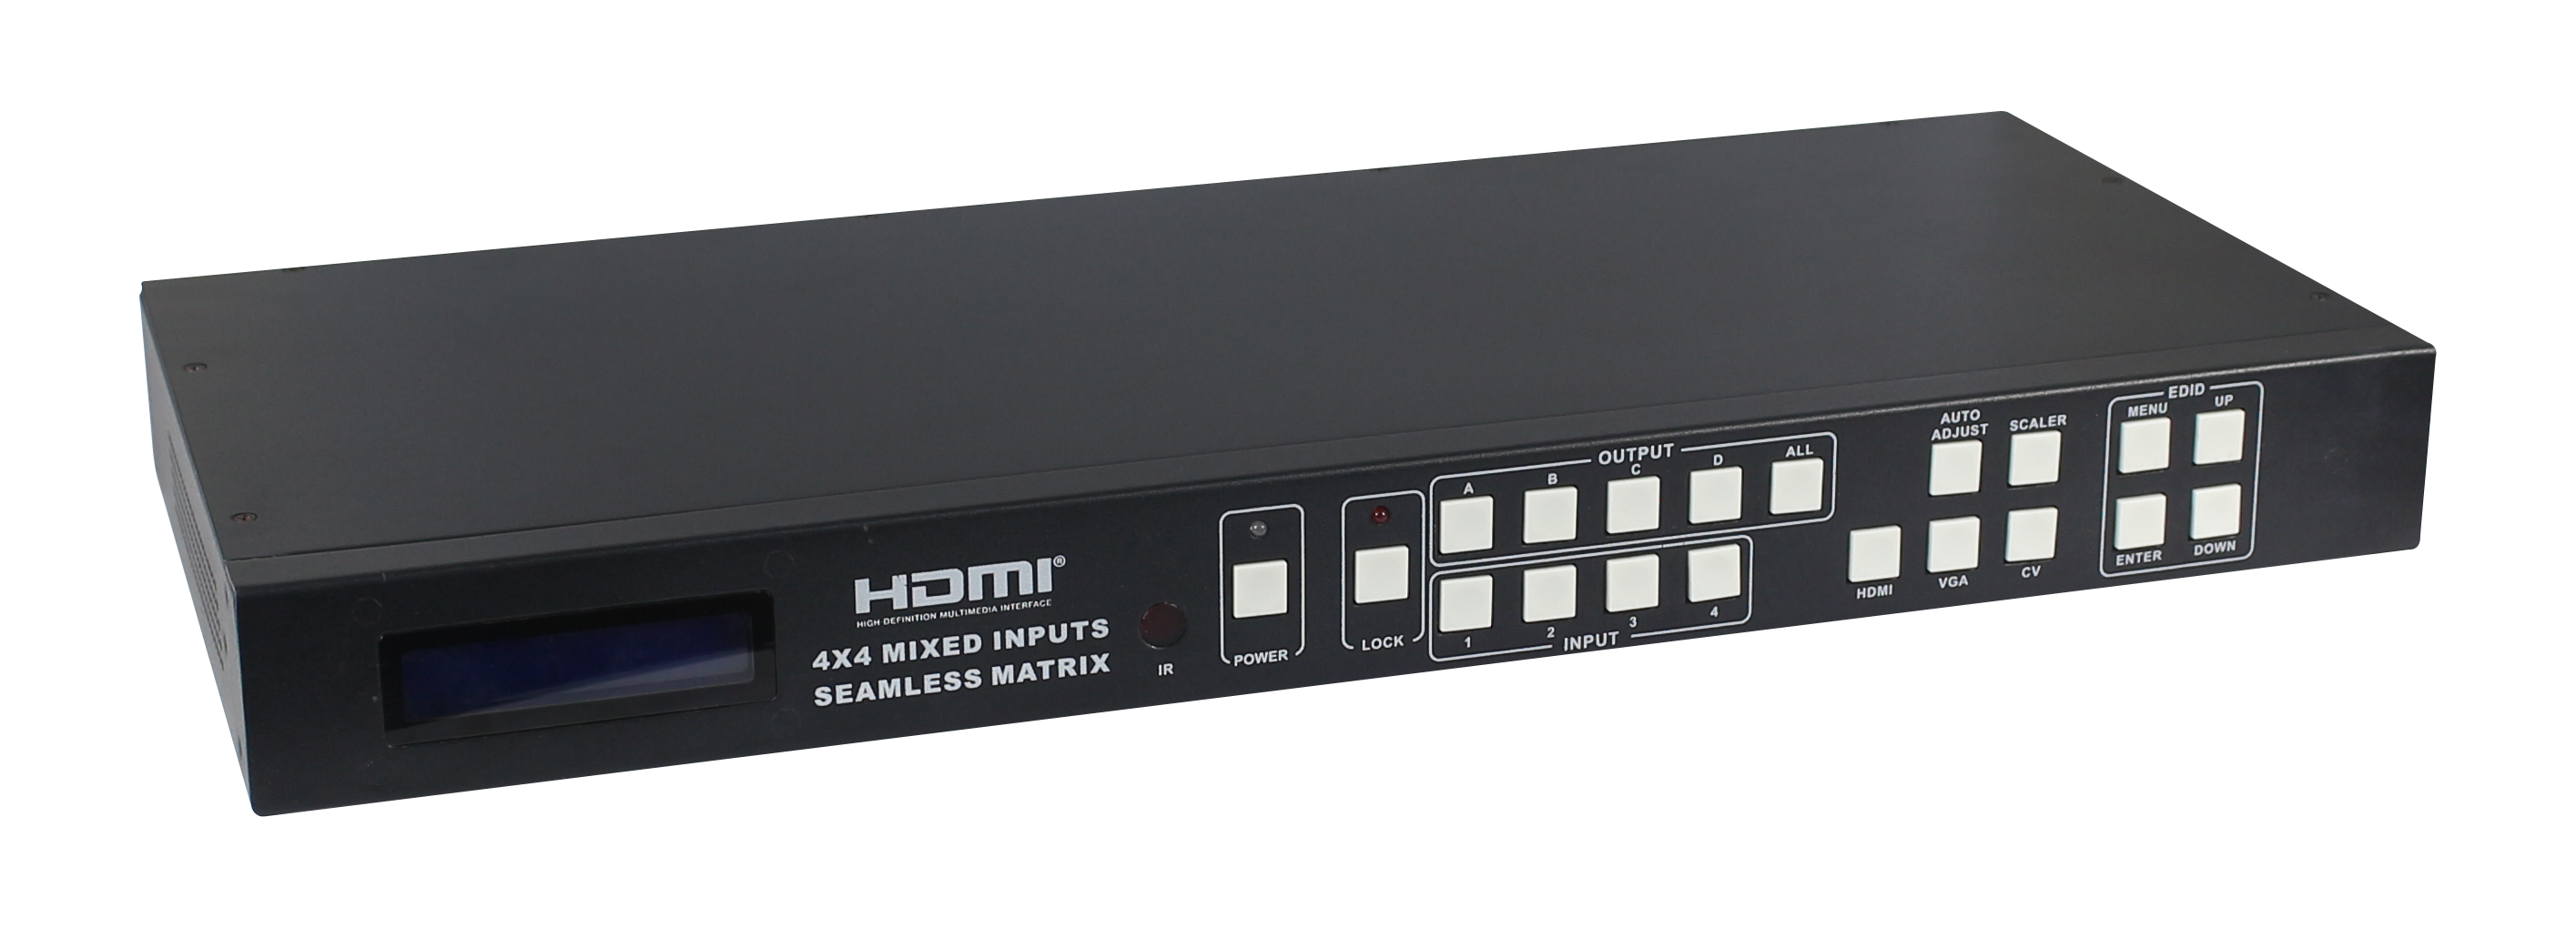 供应HDMI无缝切换矩阵厂家，HDMI混合矩阵，HDMI画面分割器，HDMI画面拼接，大屏幕拼接，大屏幕分割